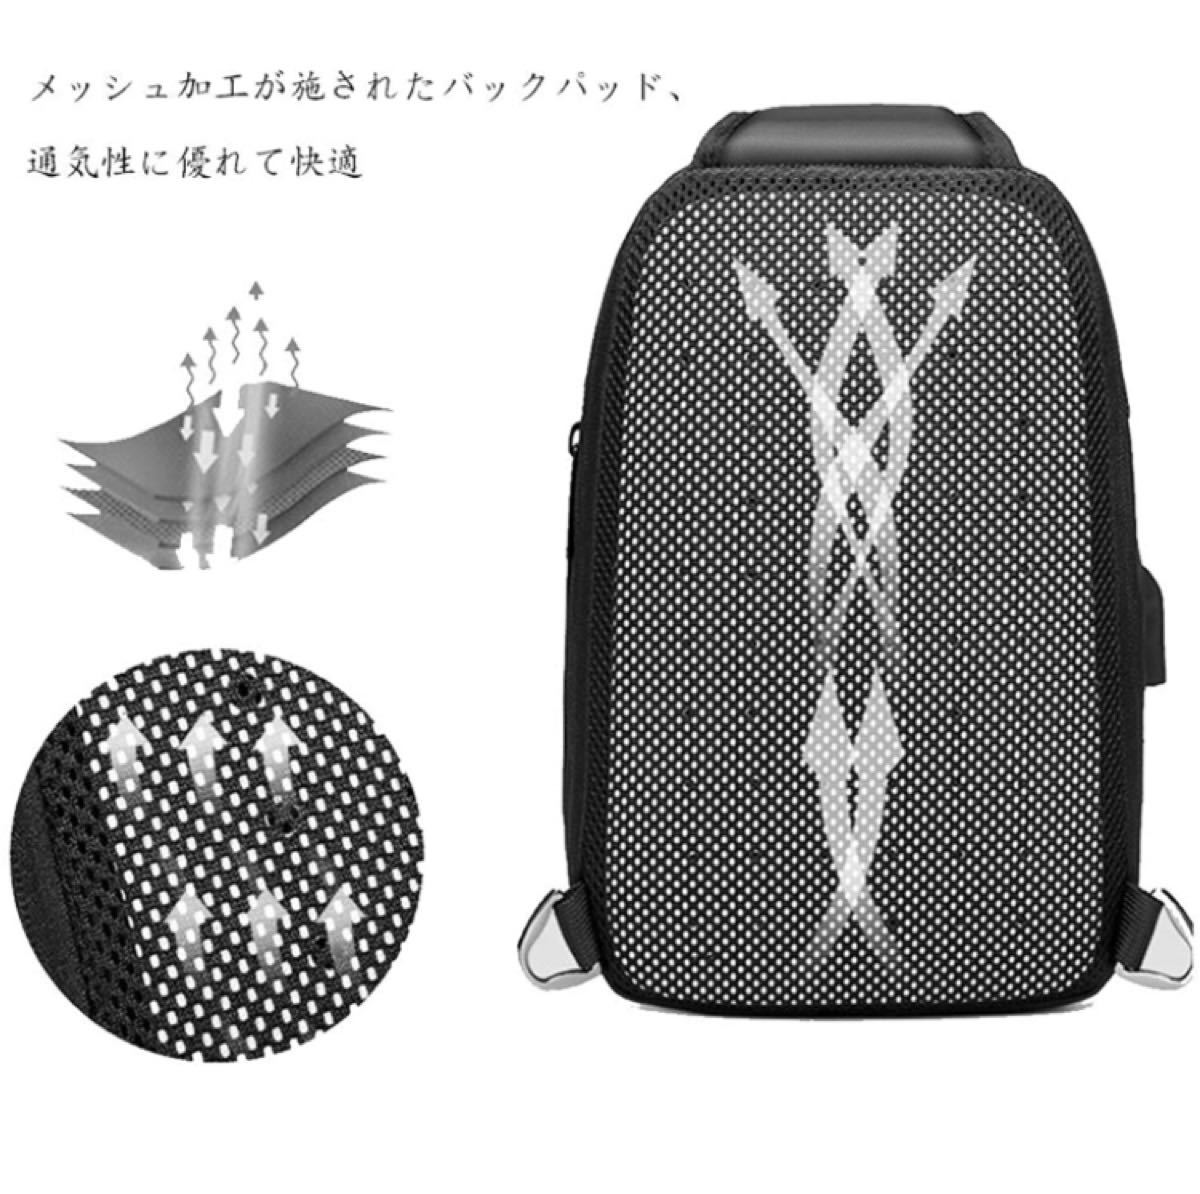 【本日限定セール】ZARA系 海外ブランド ボディバッグ 大容量 USBポート 軽量 メンズ ワンショルダーバッグ 防水 ブラック